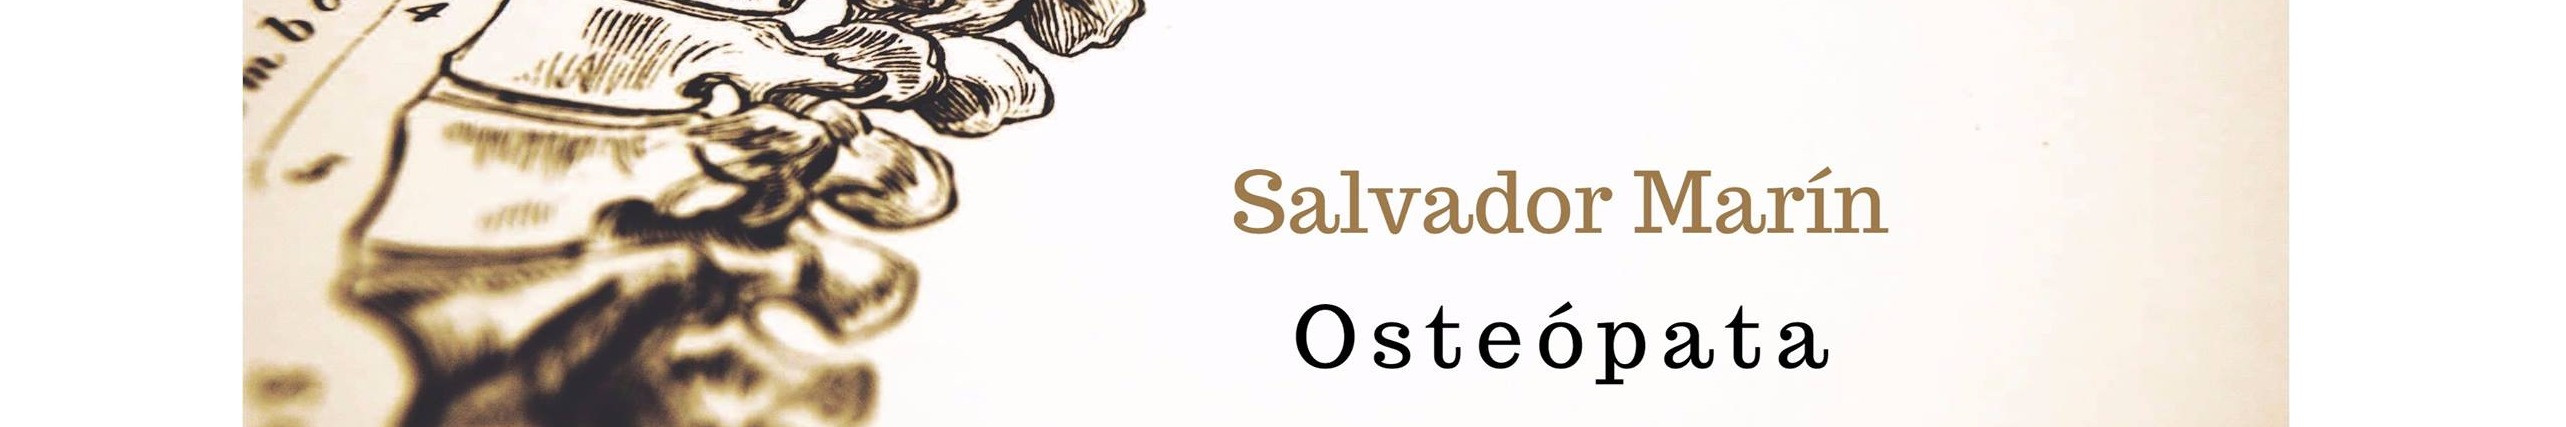 Osteopatía Salvador Marín